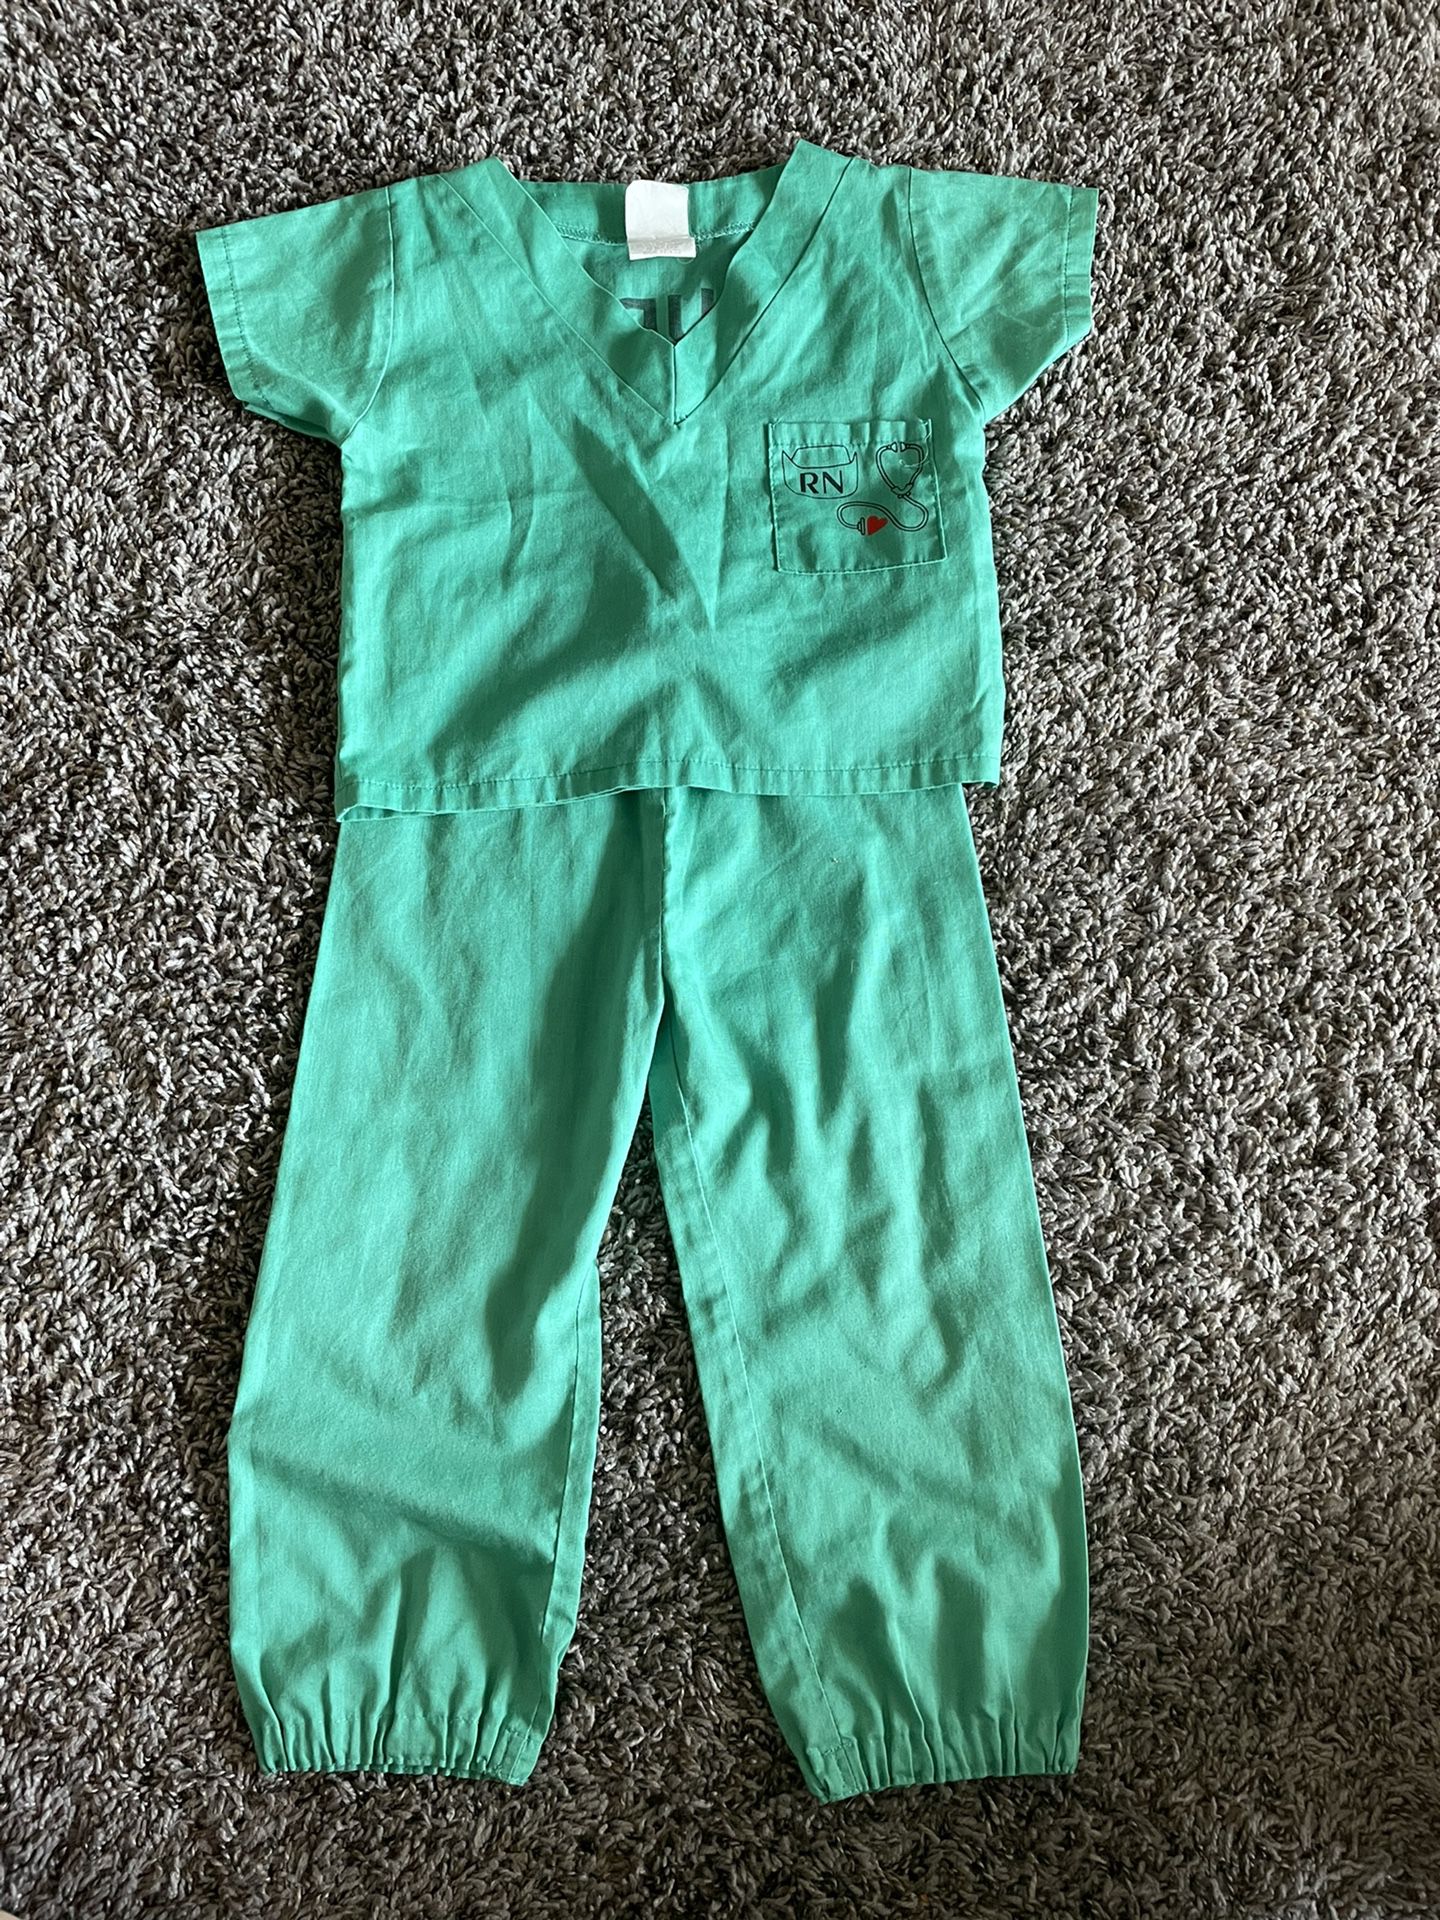 Nurse Costume 3/4T - $10